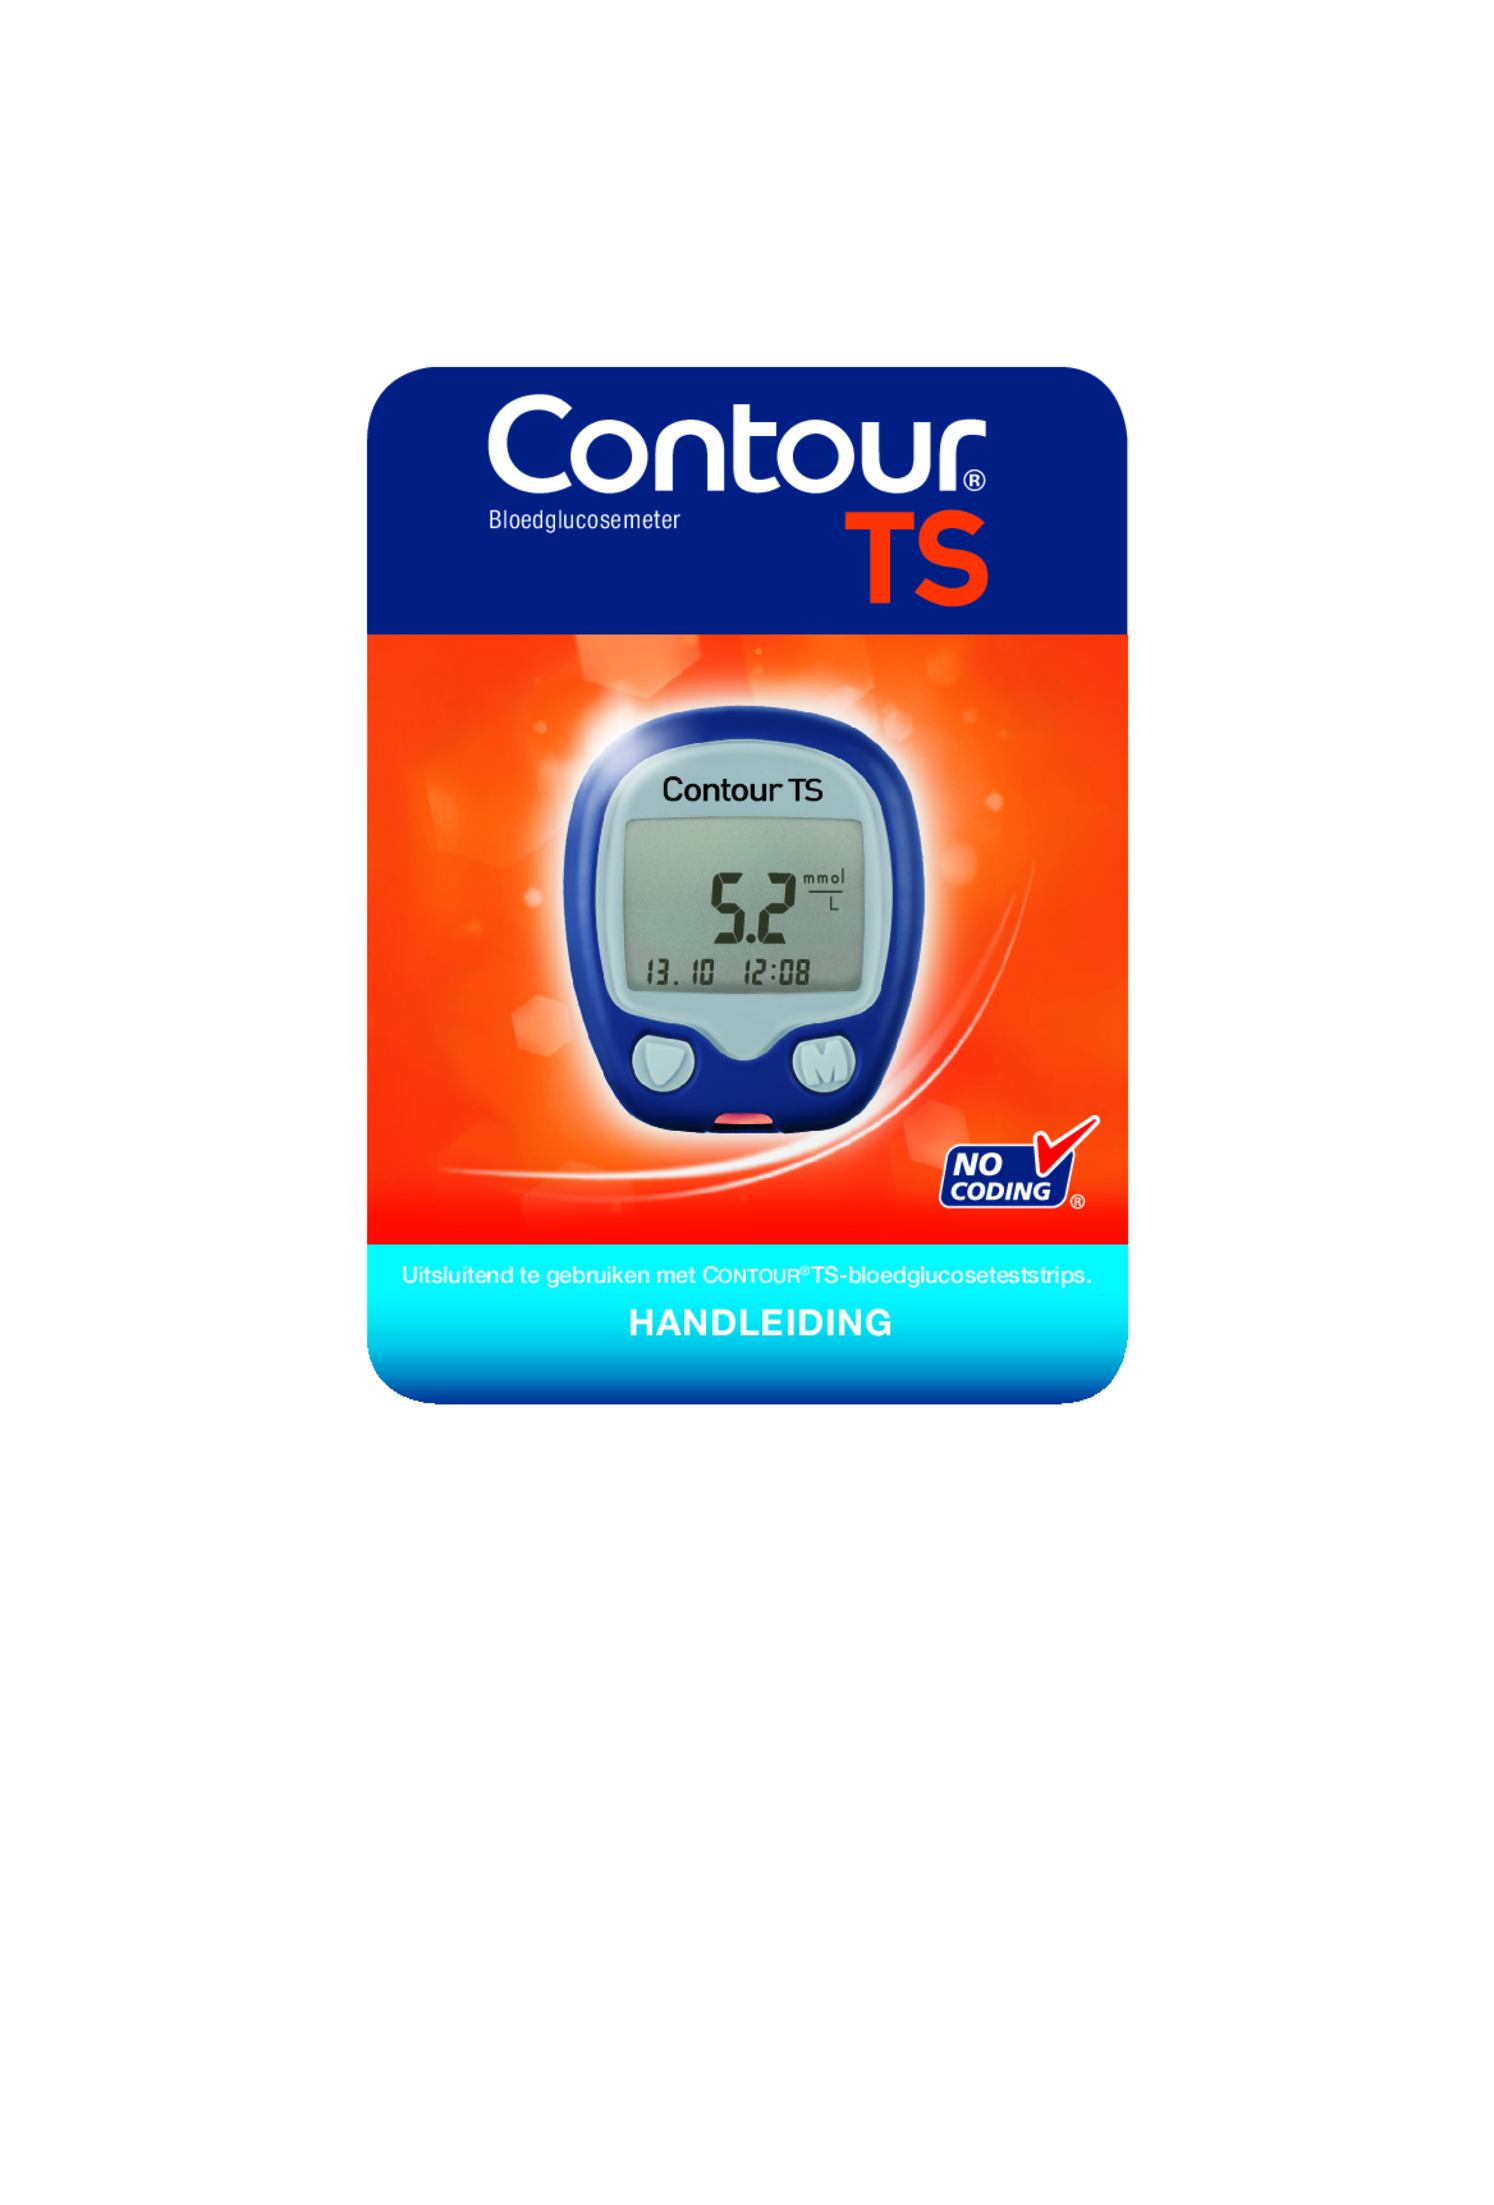 Contour TS Glucosemeter Startpakket afbeelding van document #1, gebruiksaanwijzing